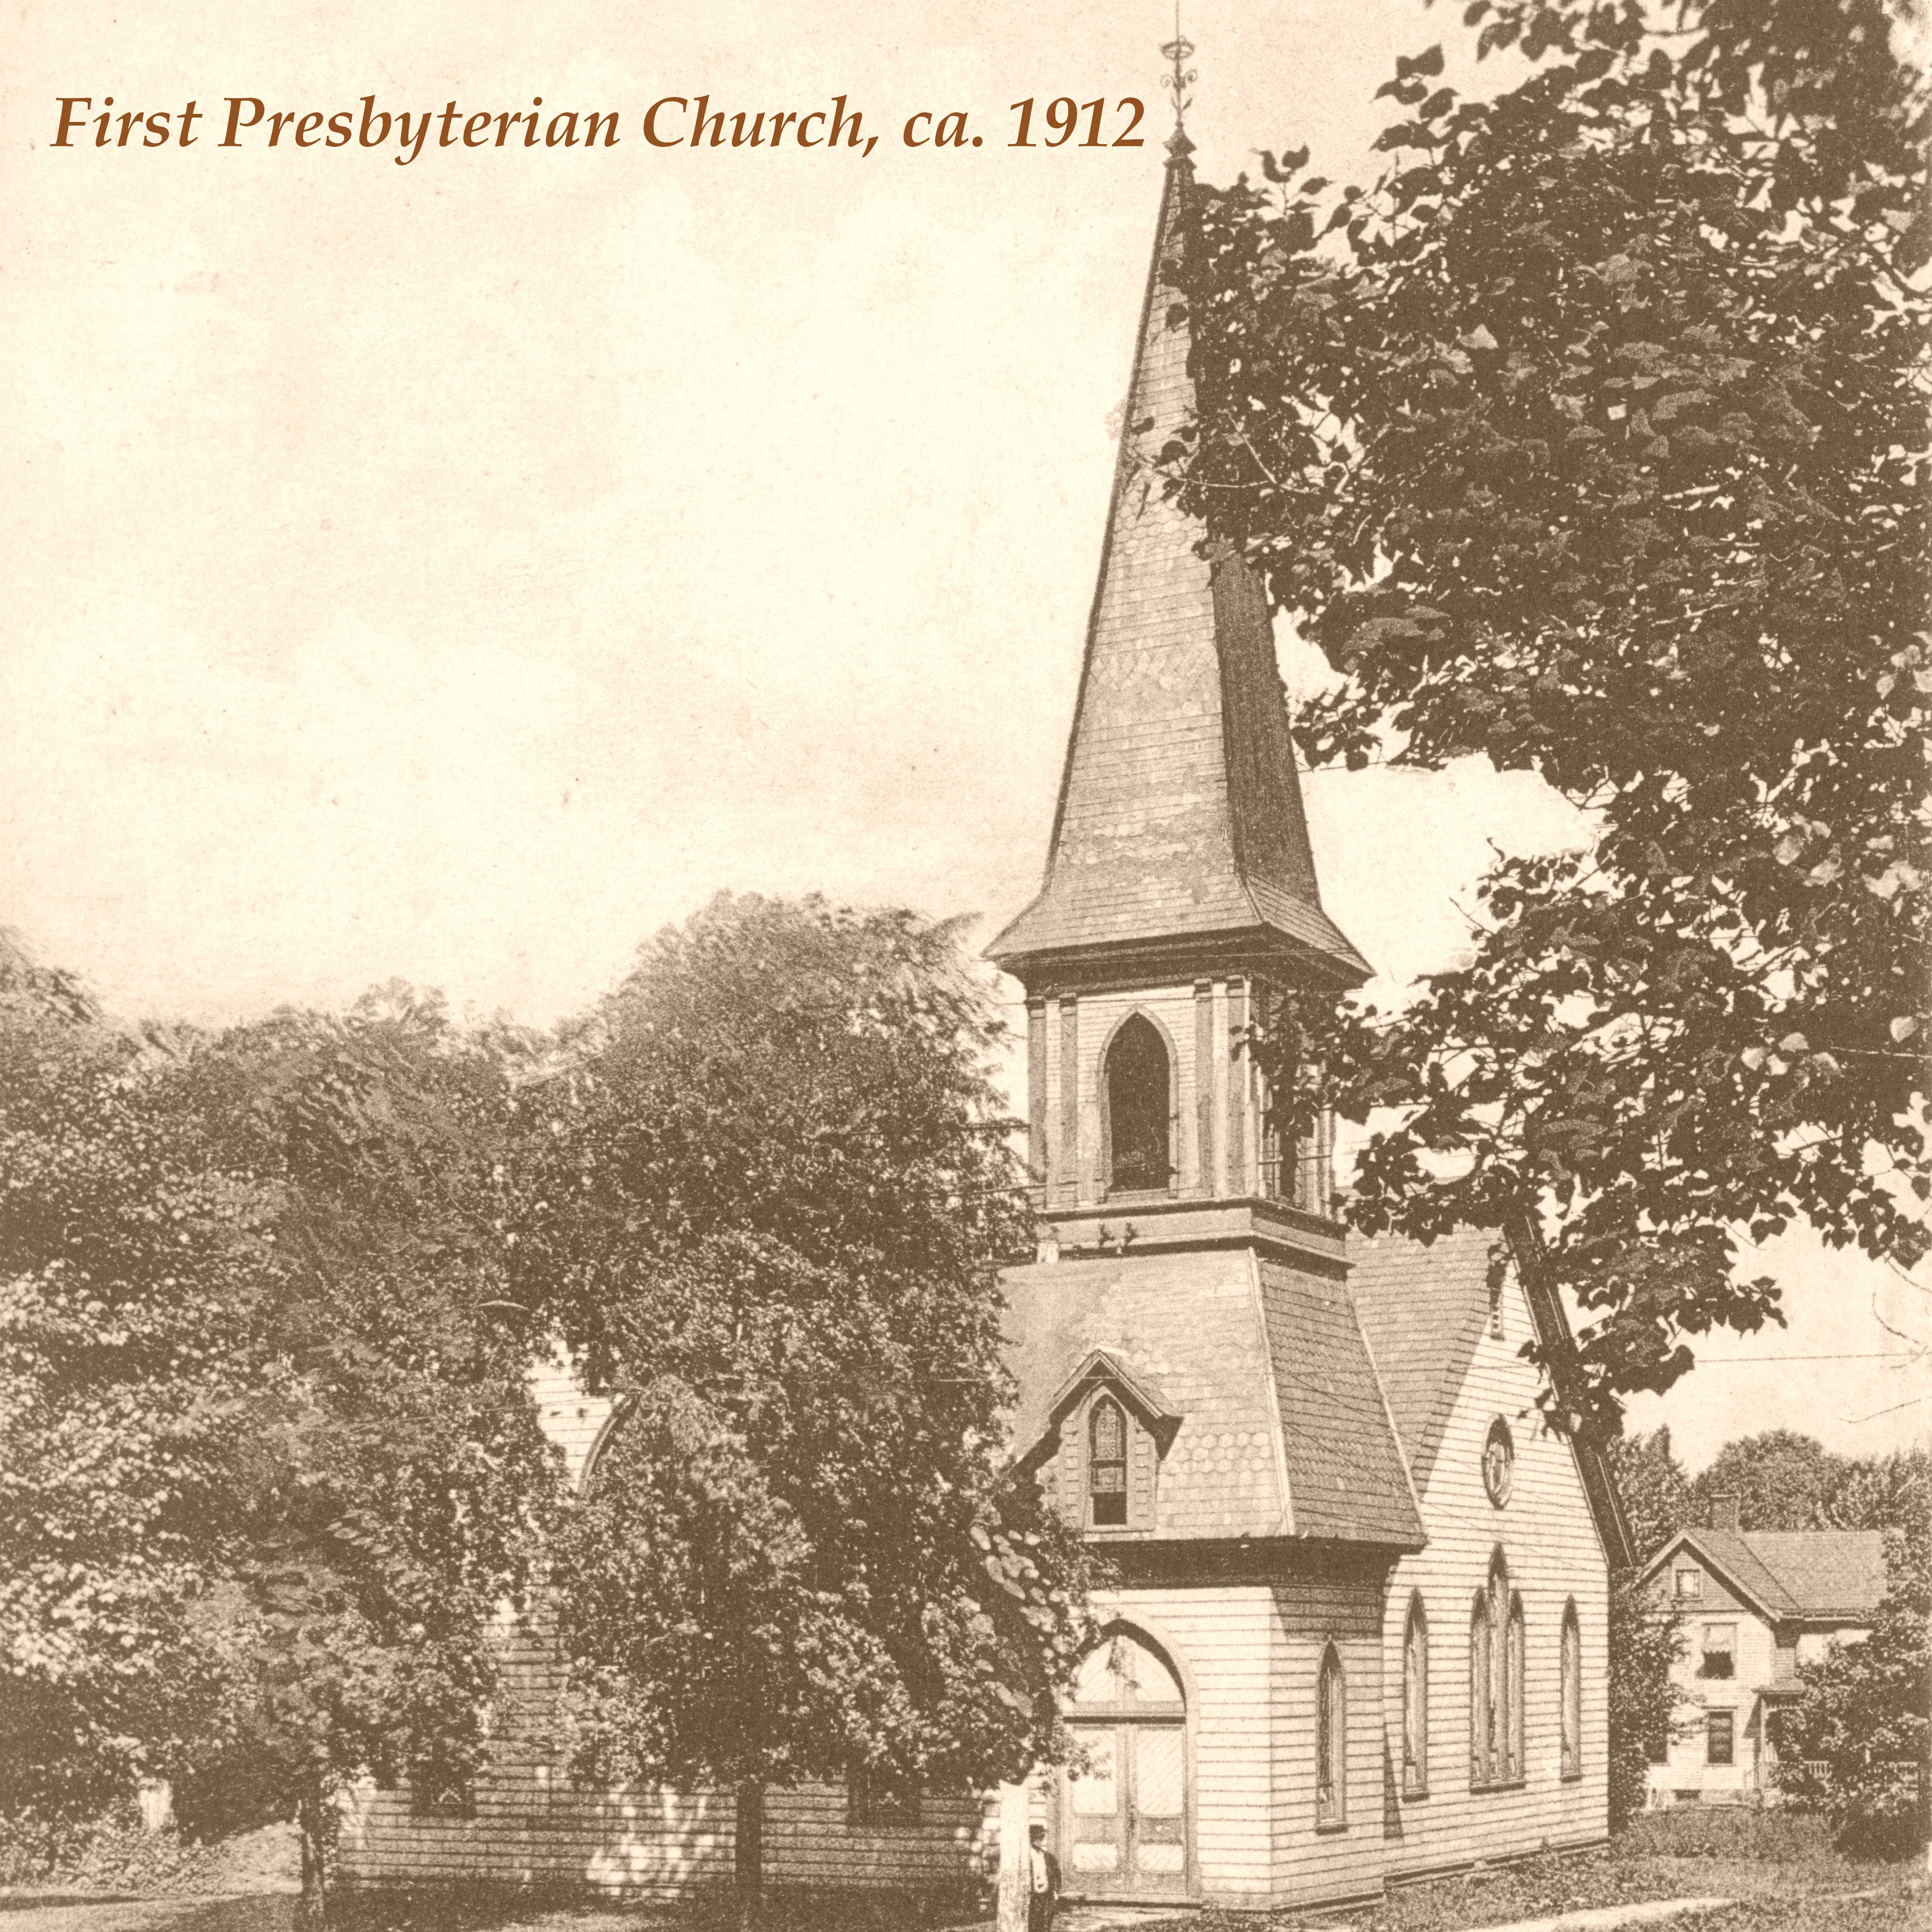 1st Presbyterian Church